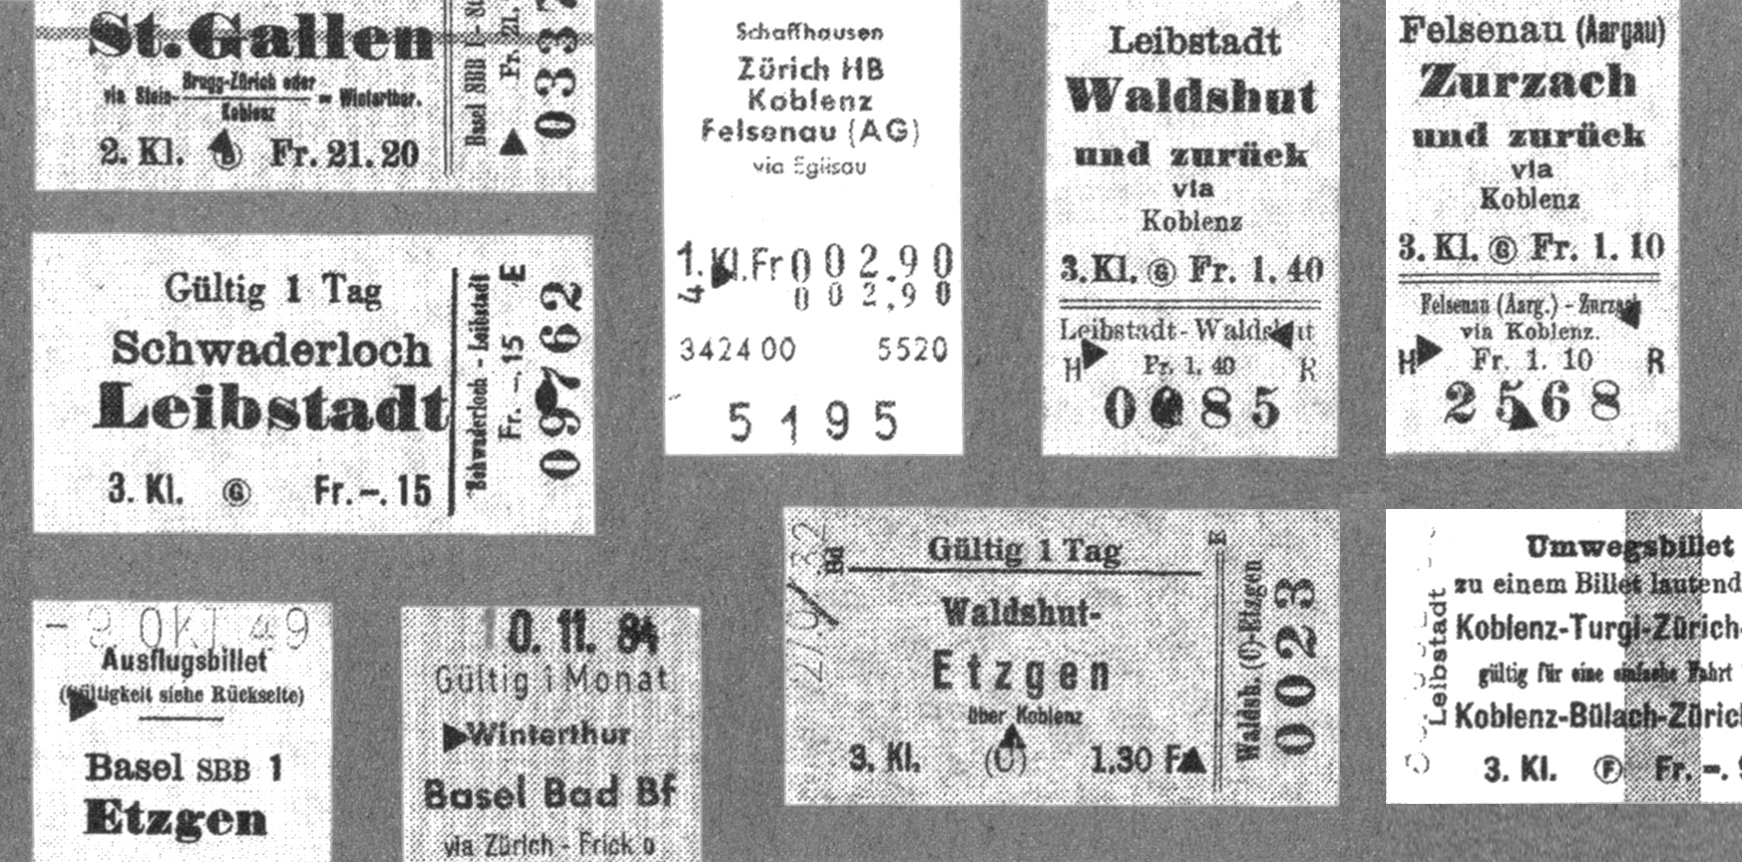 Bild alte Tickets